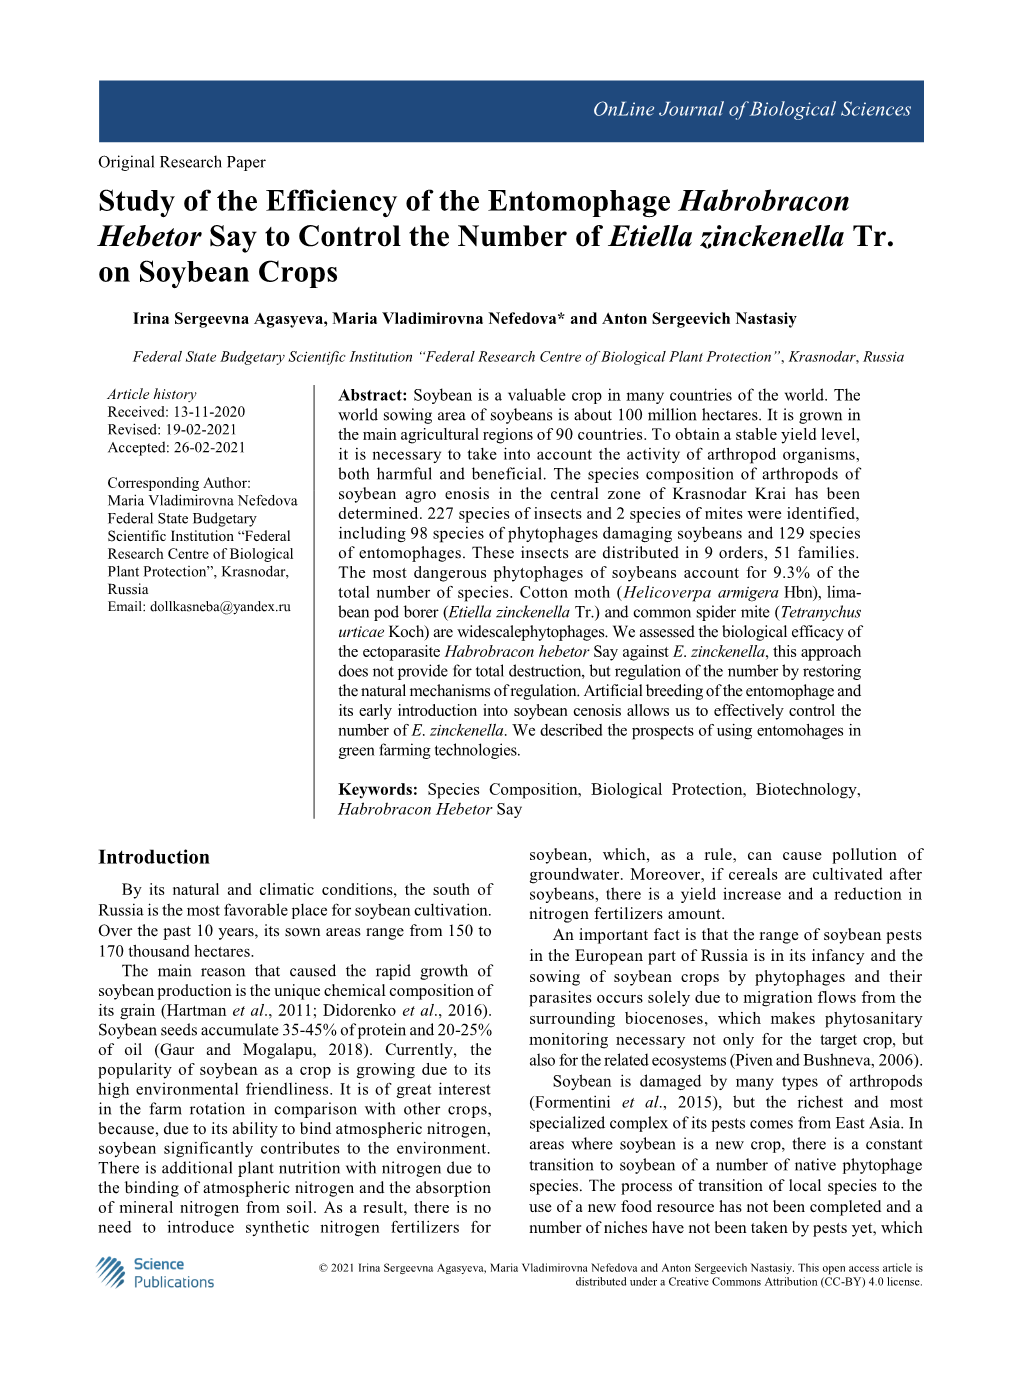 Study of the Efficiency of the Entomophage Habrobracon Hebetor Say to Control the Number of Etiella Zinckenella Tr